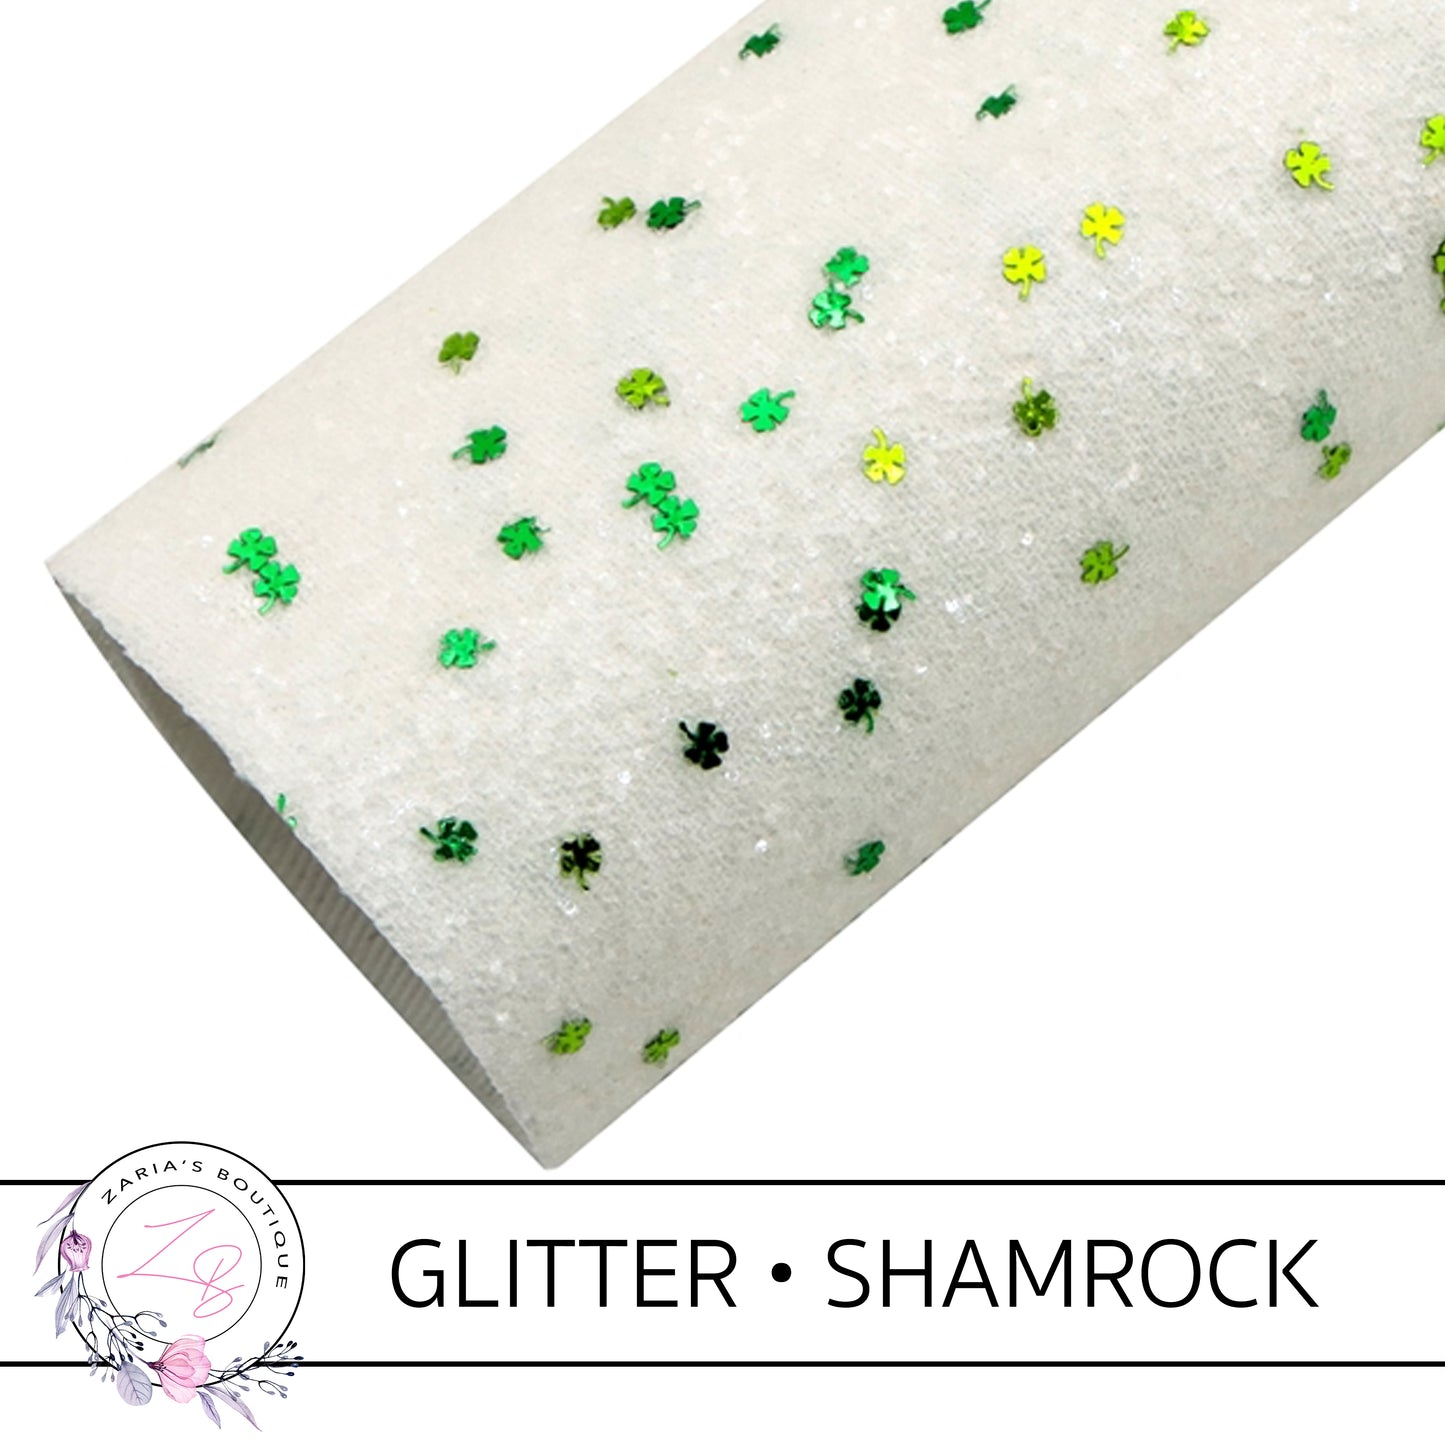 Chunky White Glitter • Green Sprinkle Shamrocks